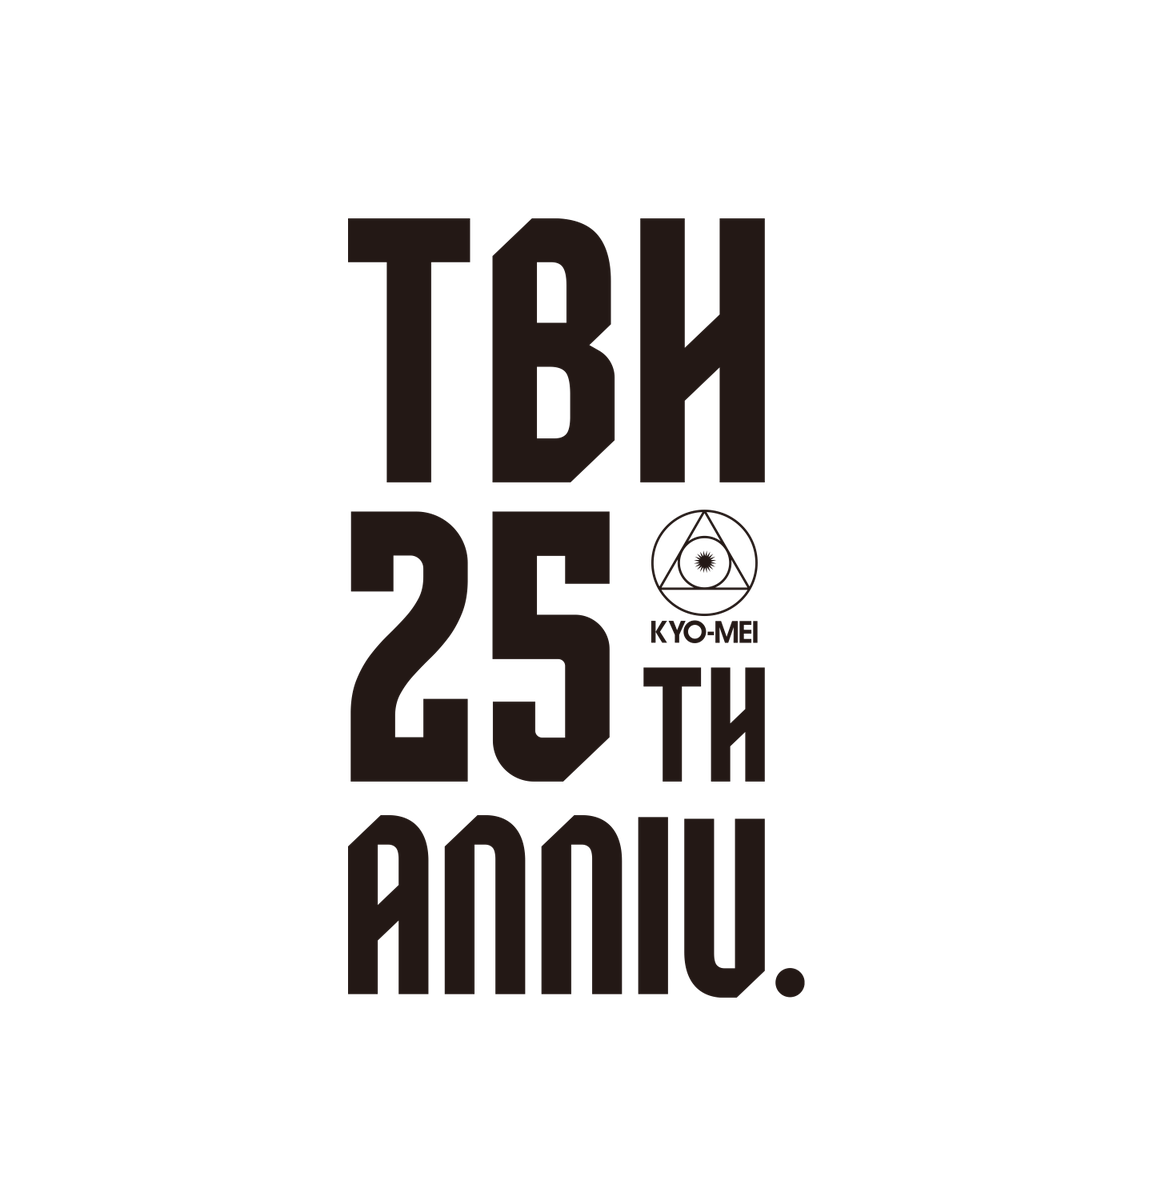 THE BACK HORNの25th ANNIVERSARYのロゴデザインを担当しました🤸‍♂️25周年イヤーの様々な展開に使用していただけます。音楽の強さ・今もなお上昇していくイメージをフォントや装飾に落とし込んでいます。再びあこがれのバンドお仕事ができて光栄です! #TBH25th